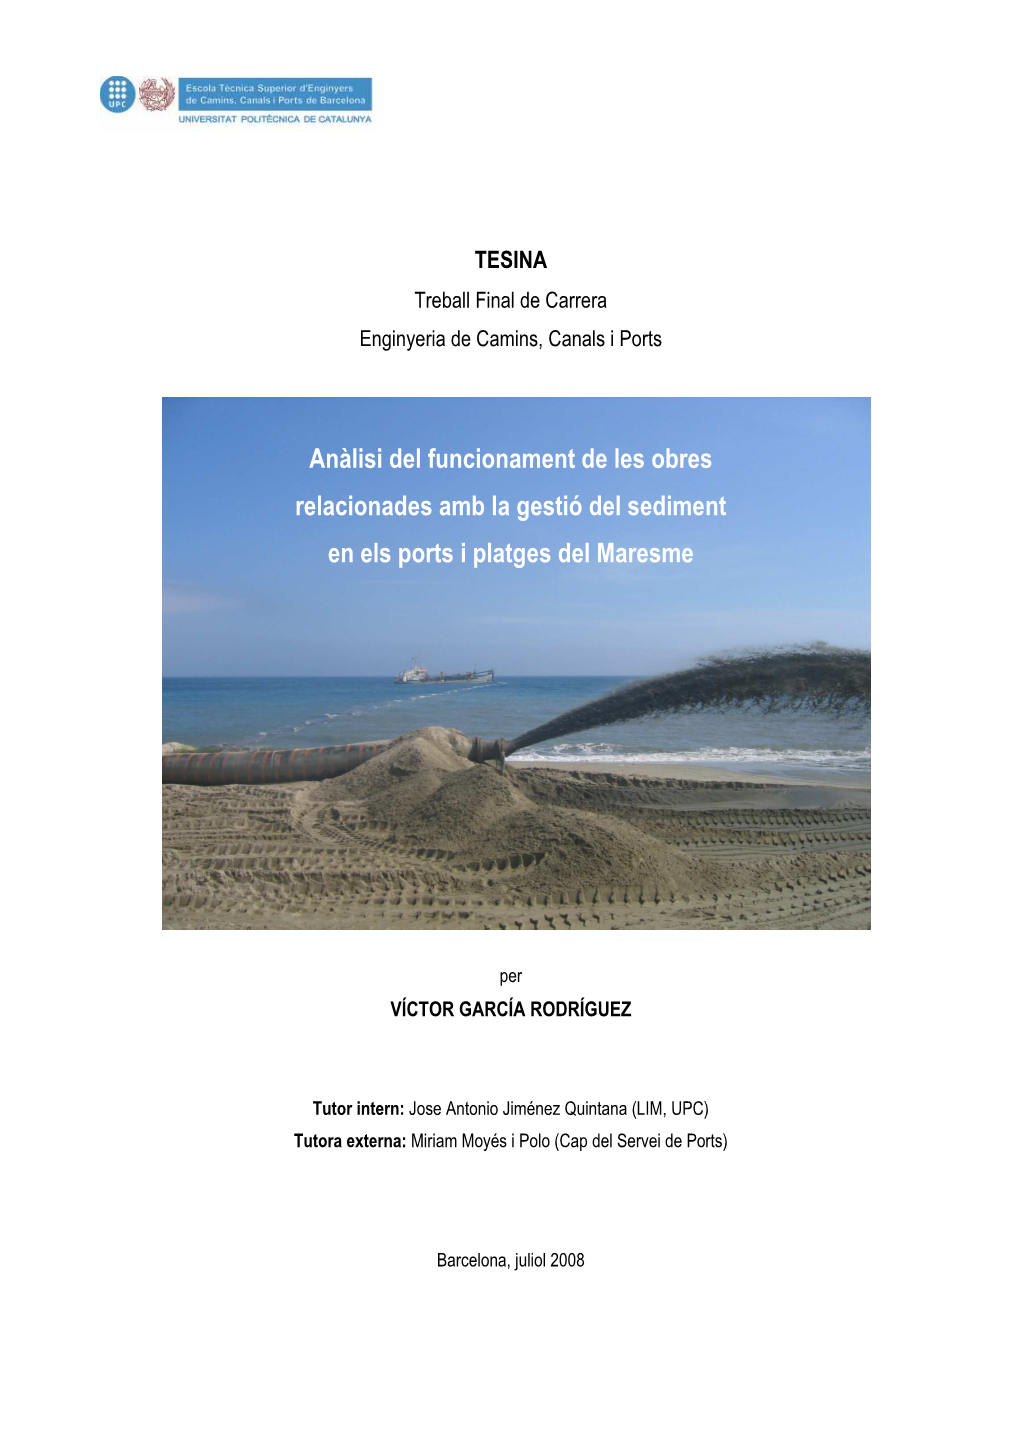 Anàlisi Del Funcionament De Les Obres Relacionades Amb La Gestió Del Sediment En Els Ports I Platges Del Maresme